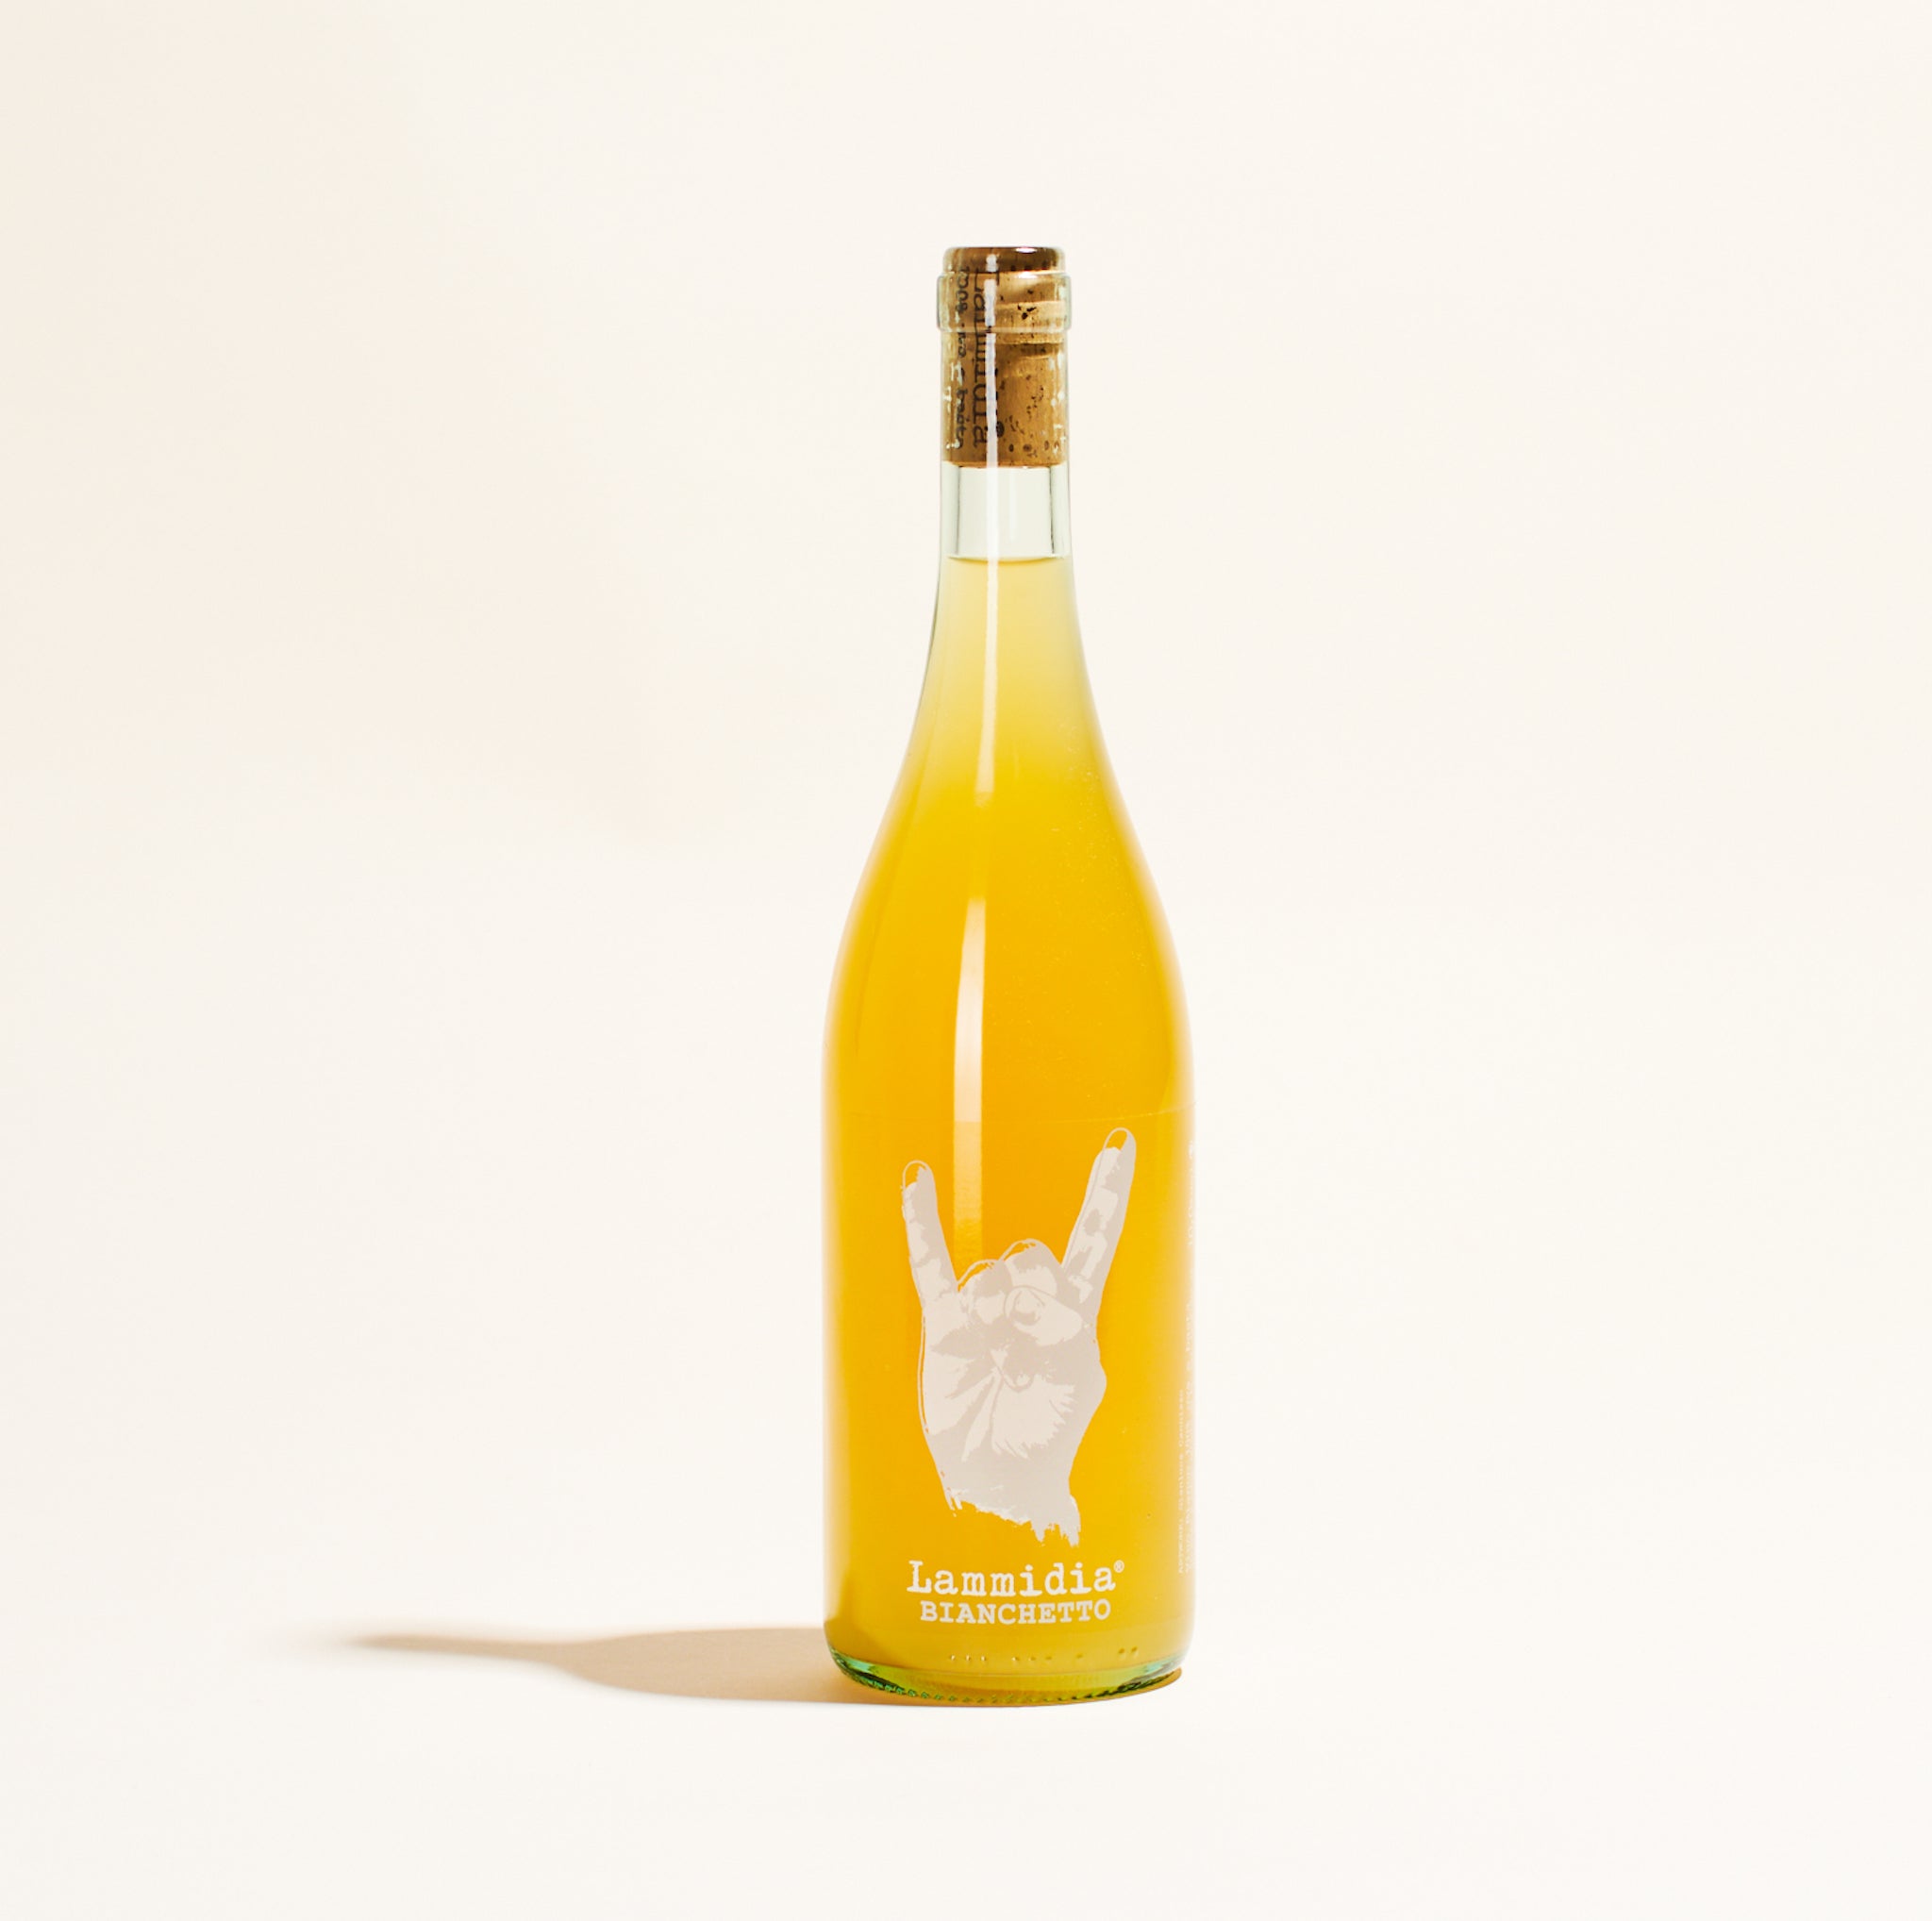 bianchetto lammidia abruzzo italy natural orange wine bottle